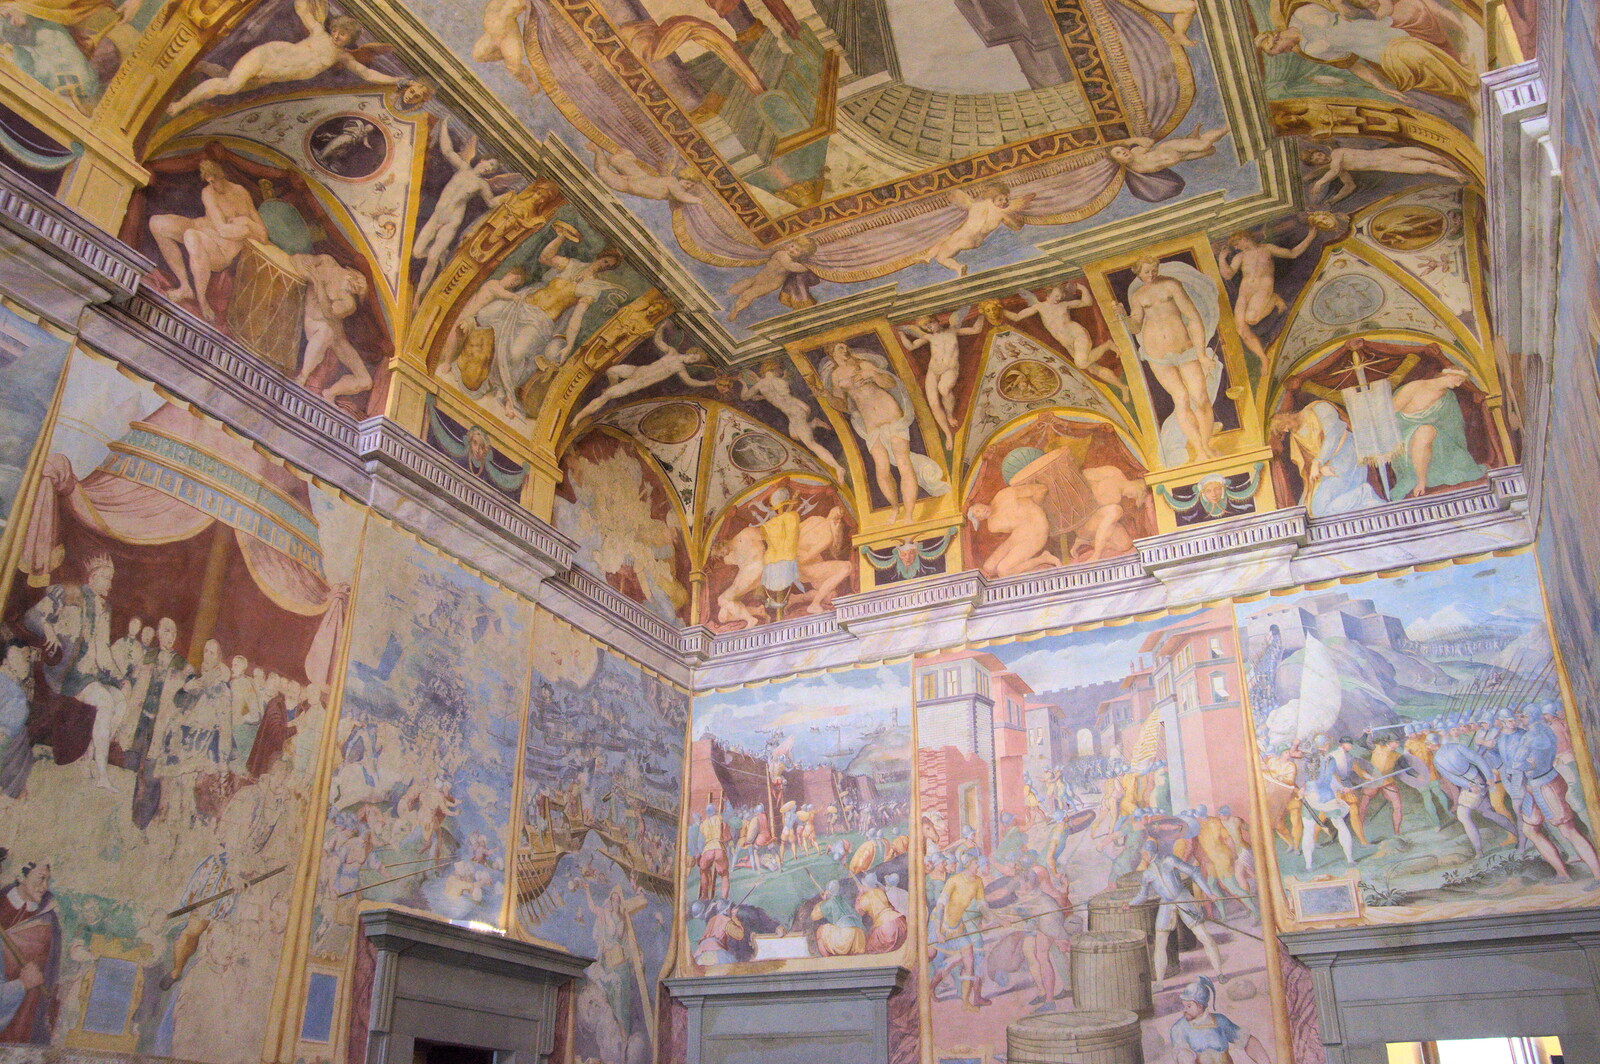 Castiglio Del Lago and Santuario della Verna, Umbria and Tuscany, Italy - 1st September 2022: Ceiling frescos in the Palazzo della Corgna